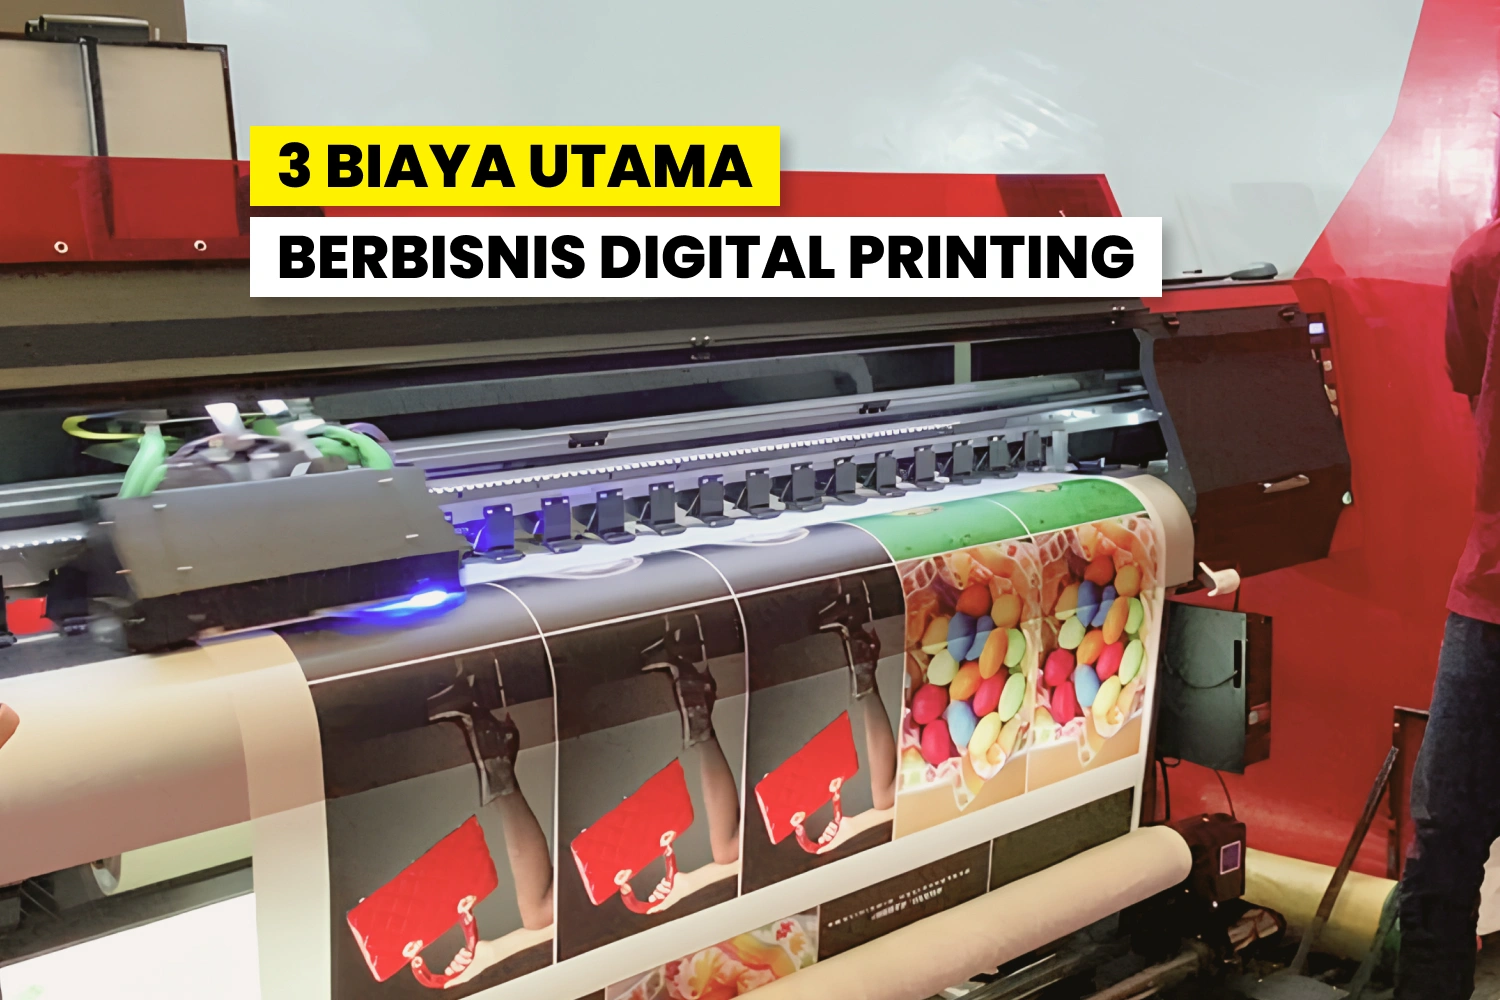 Biaya Bisnis Digital Printing Seperti Investasi Printer, Bahan Baku Dan Operasional.